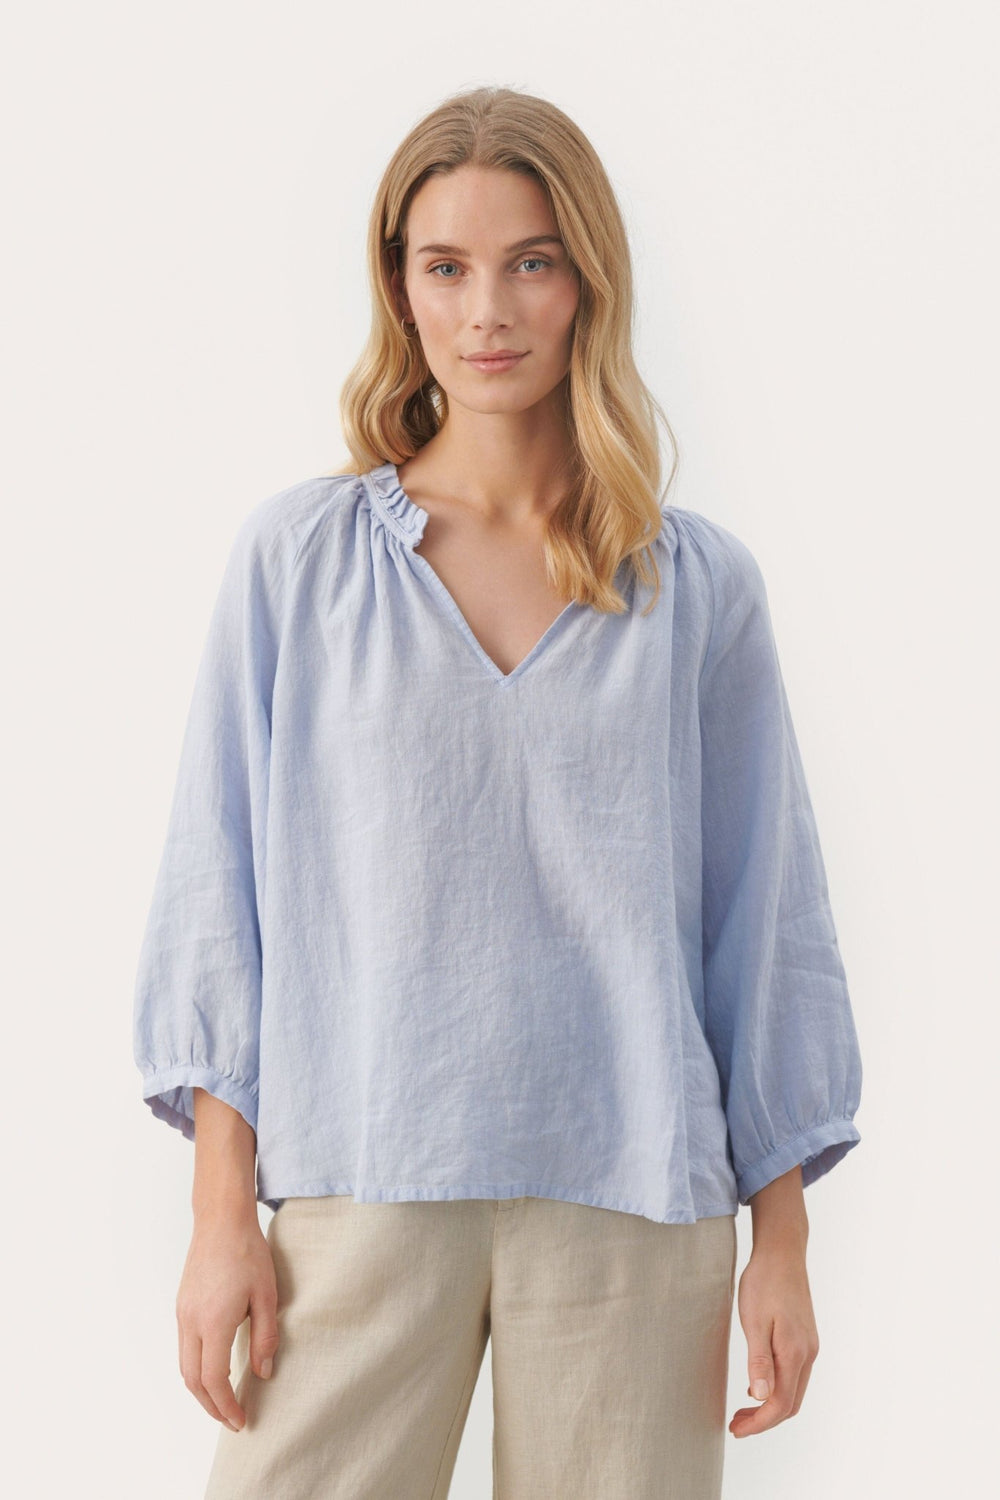 Elodypw Blouse Heather | Skjorter og bluser | Smuk - Dameklær på nett